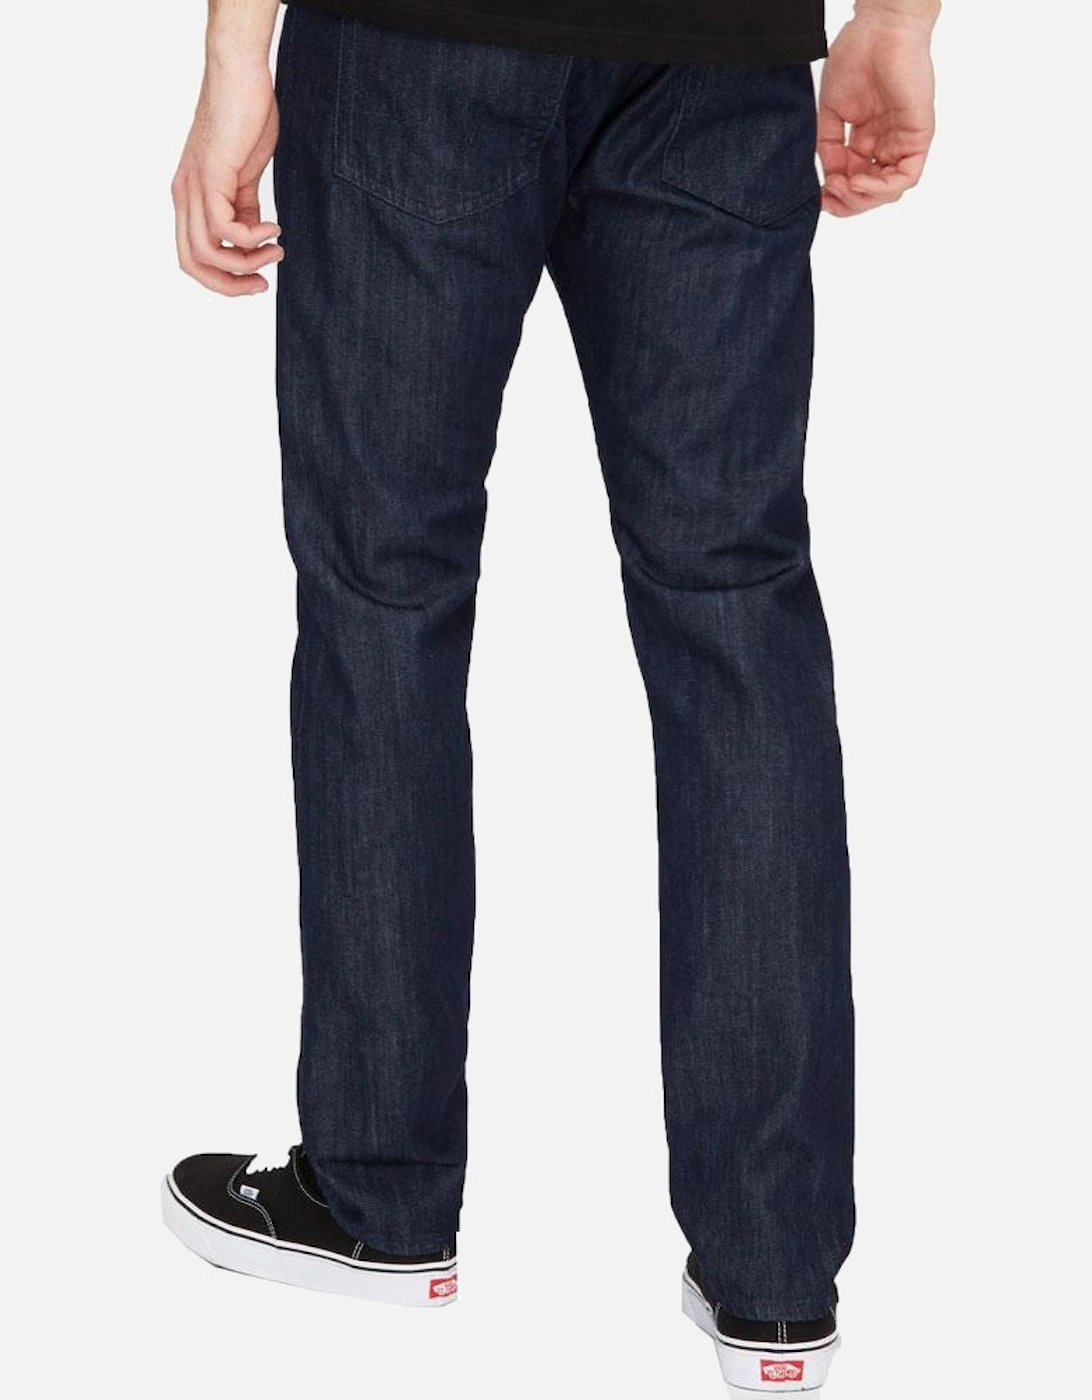 ED-55 Regular Tapered Jeans - Kingston Blue Denim - Rinse